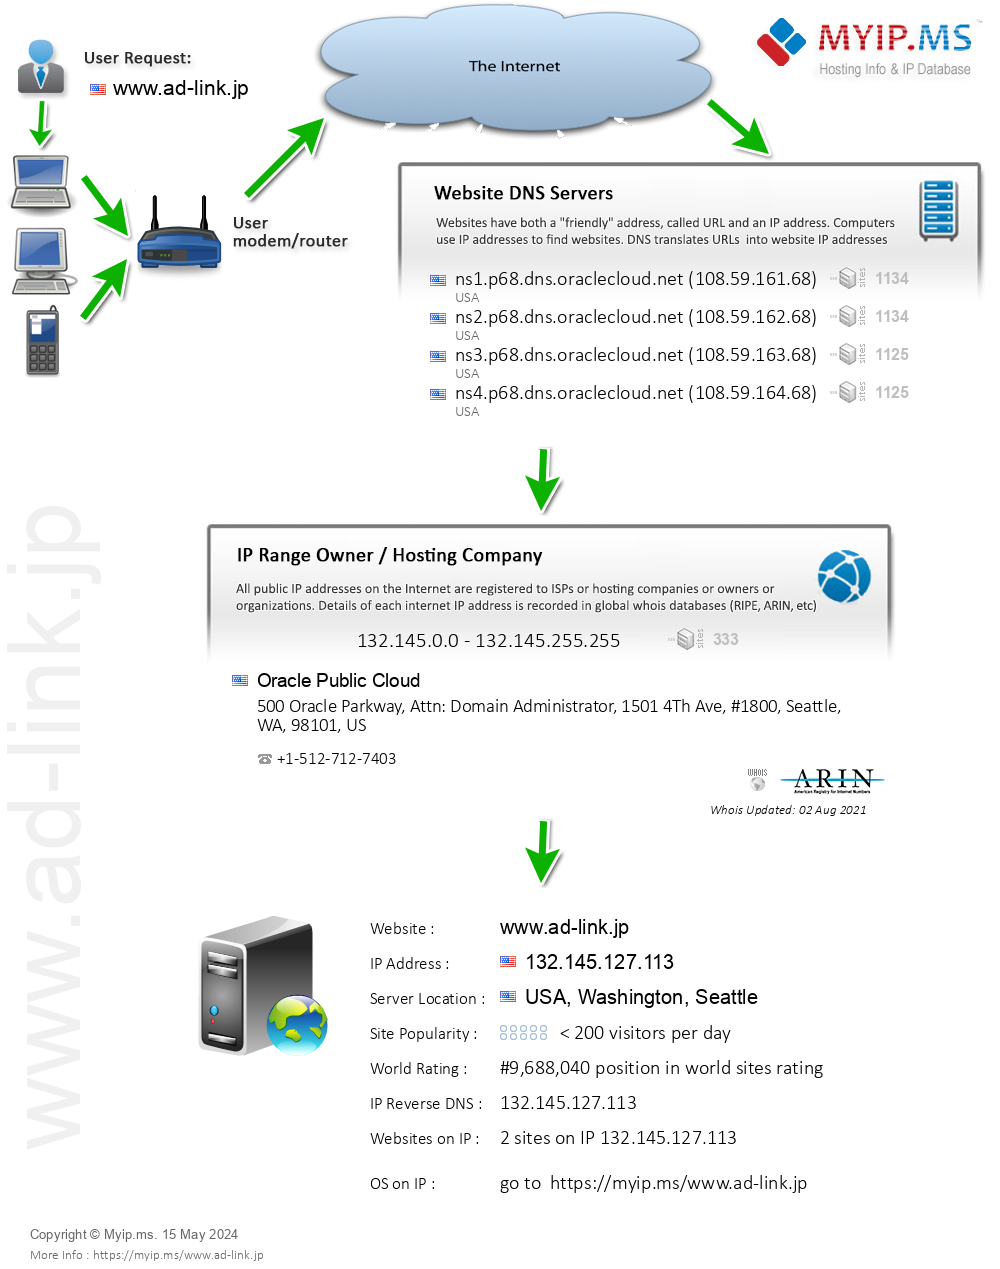 Ad-link.jp - Website Hosting Visual IP Diagram